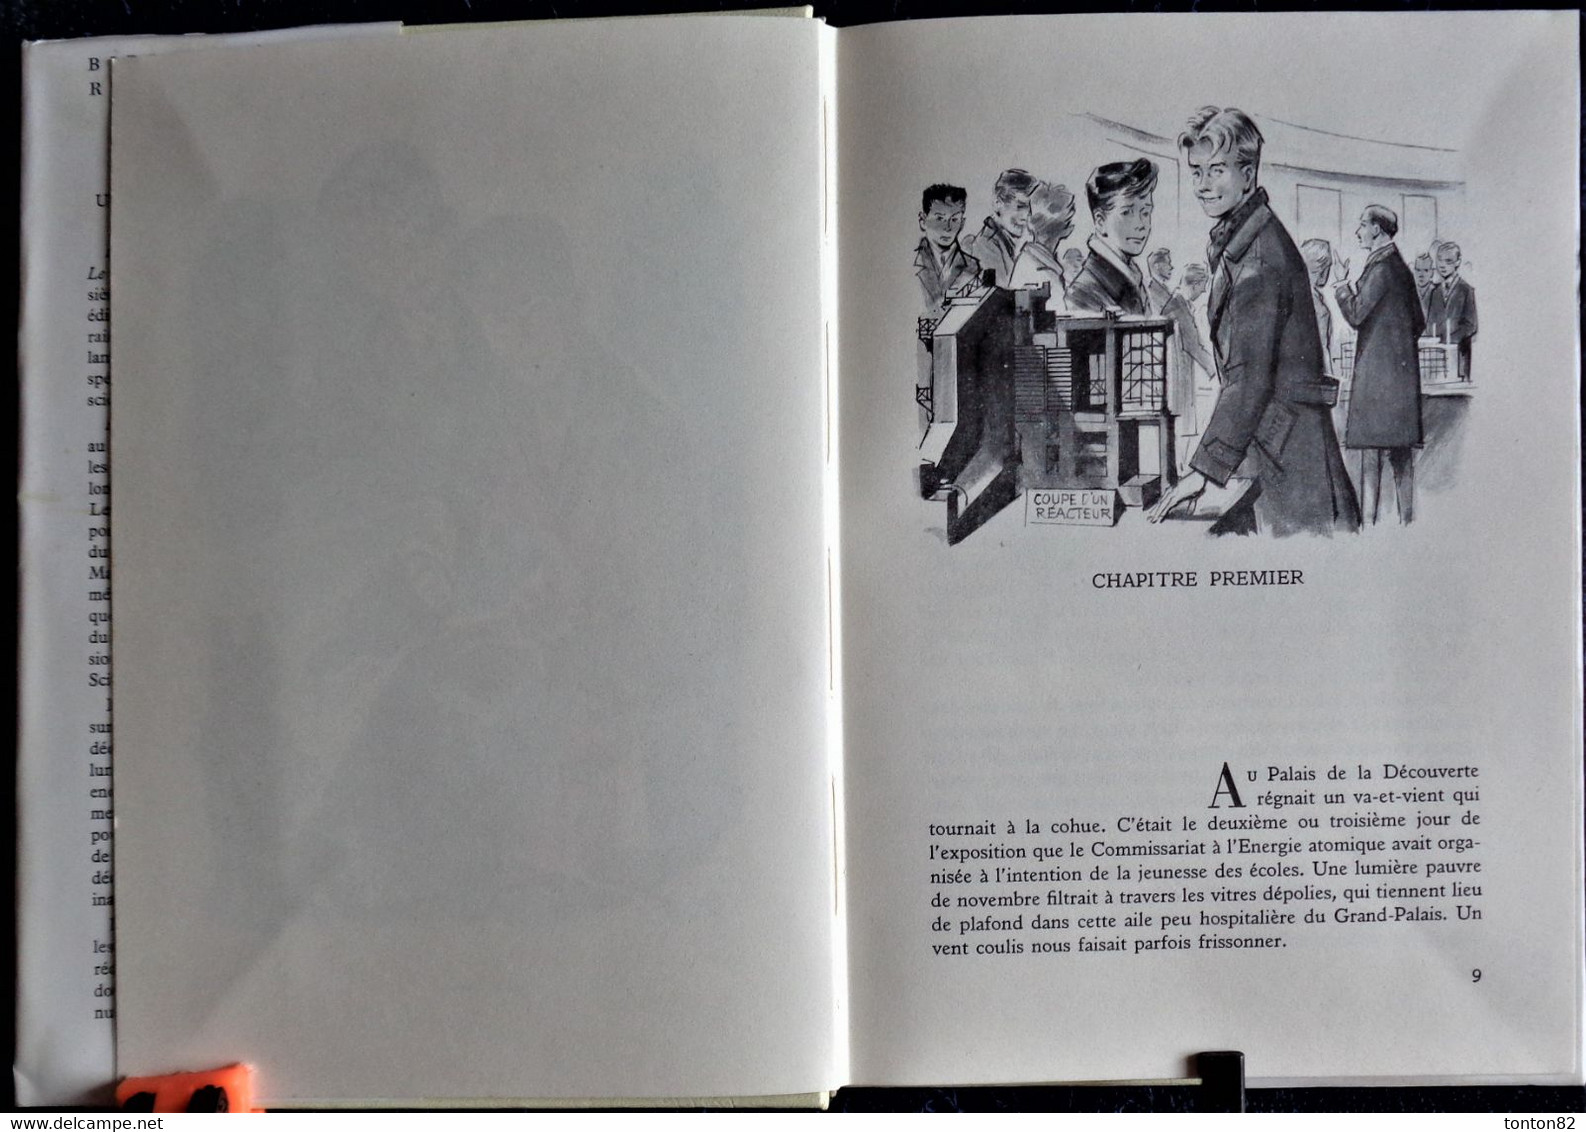 André Massepain - Une Affaire Atomique - Rouge Et Or Souveraine - ( 1961 ) . - Bibliotheque Rouge Et Or